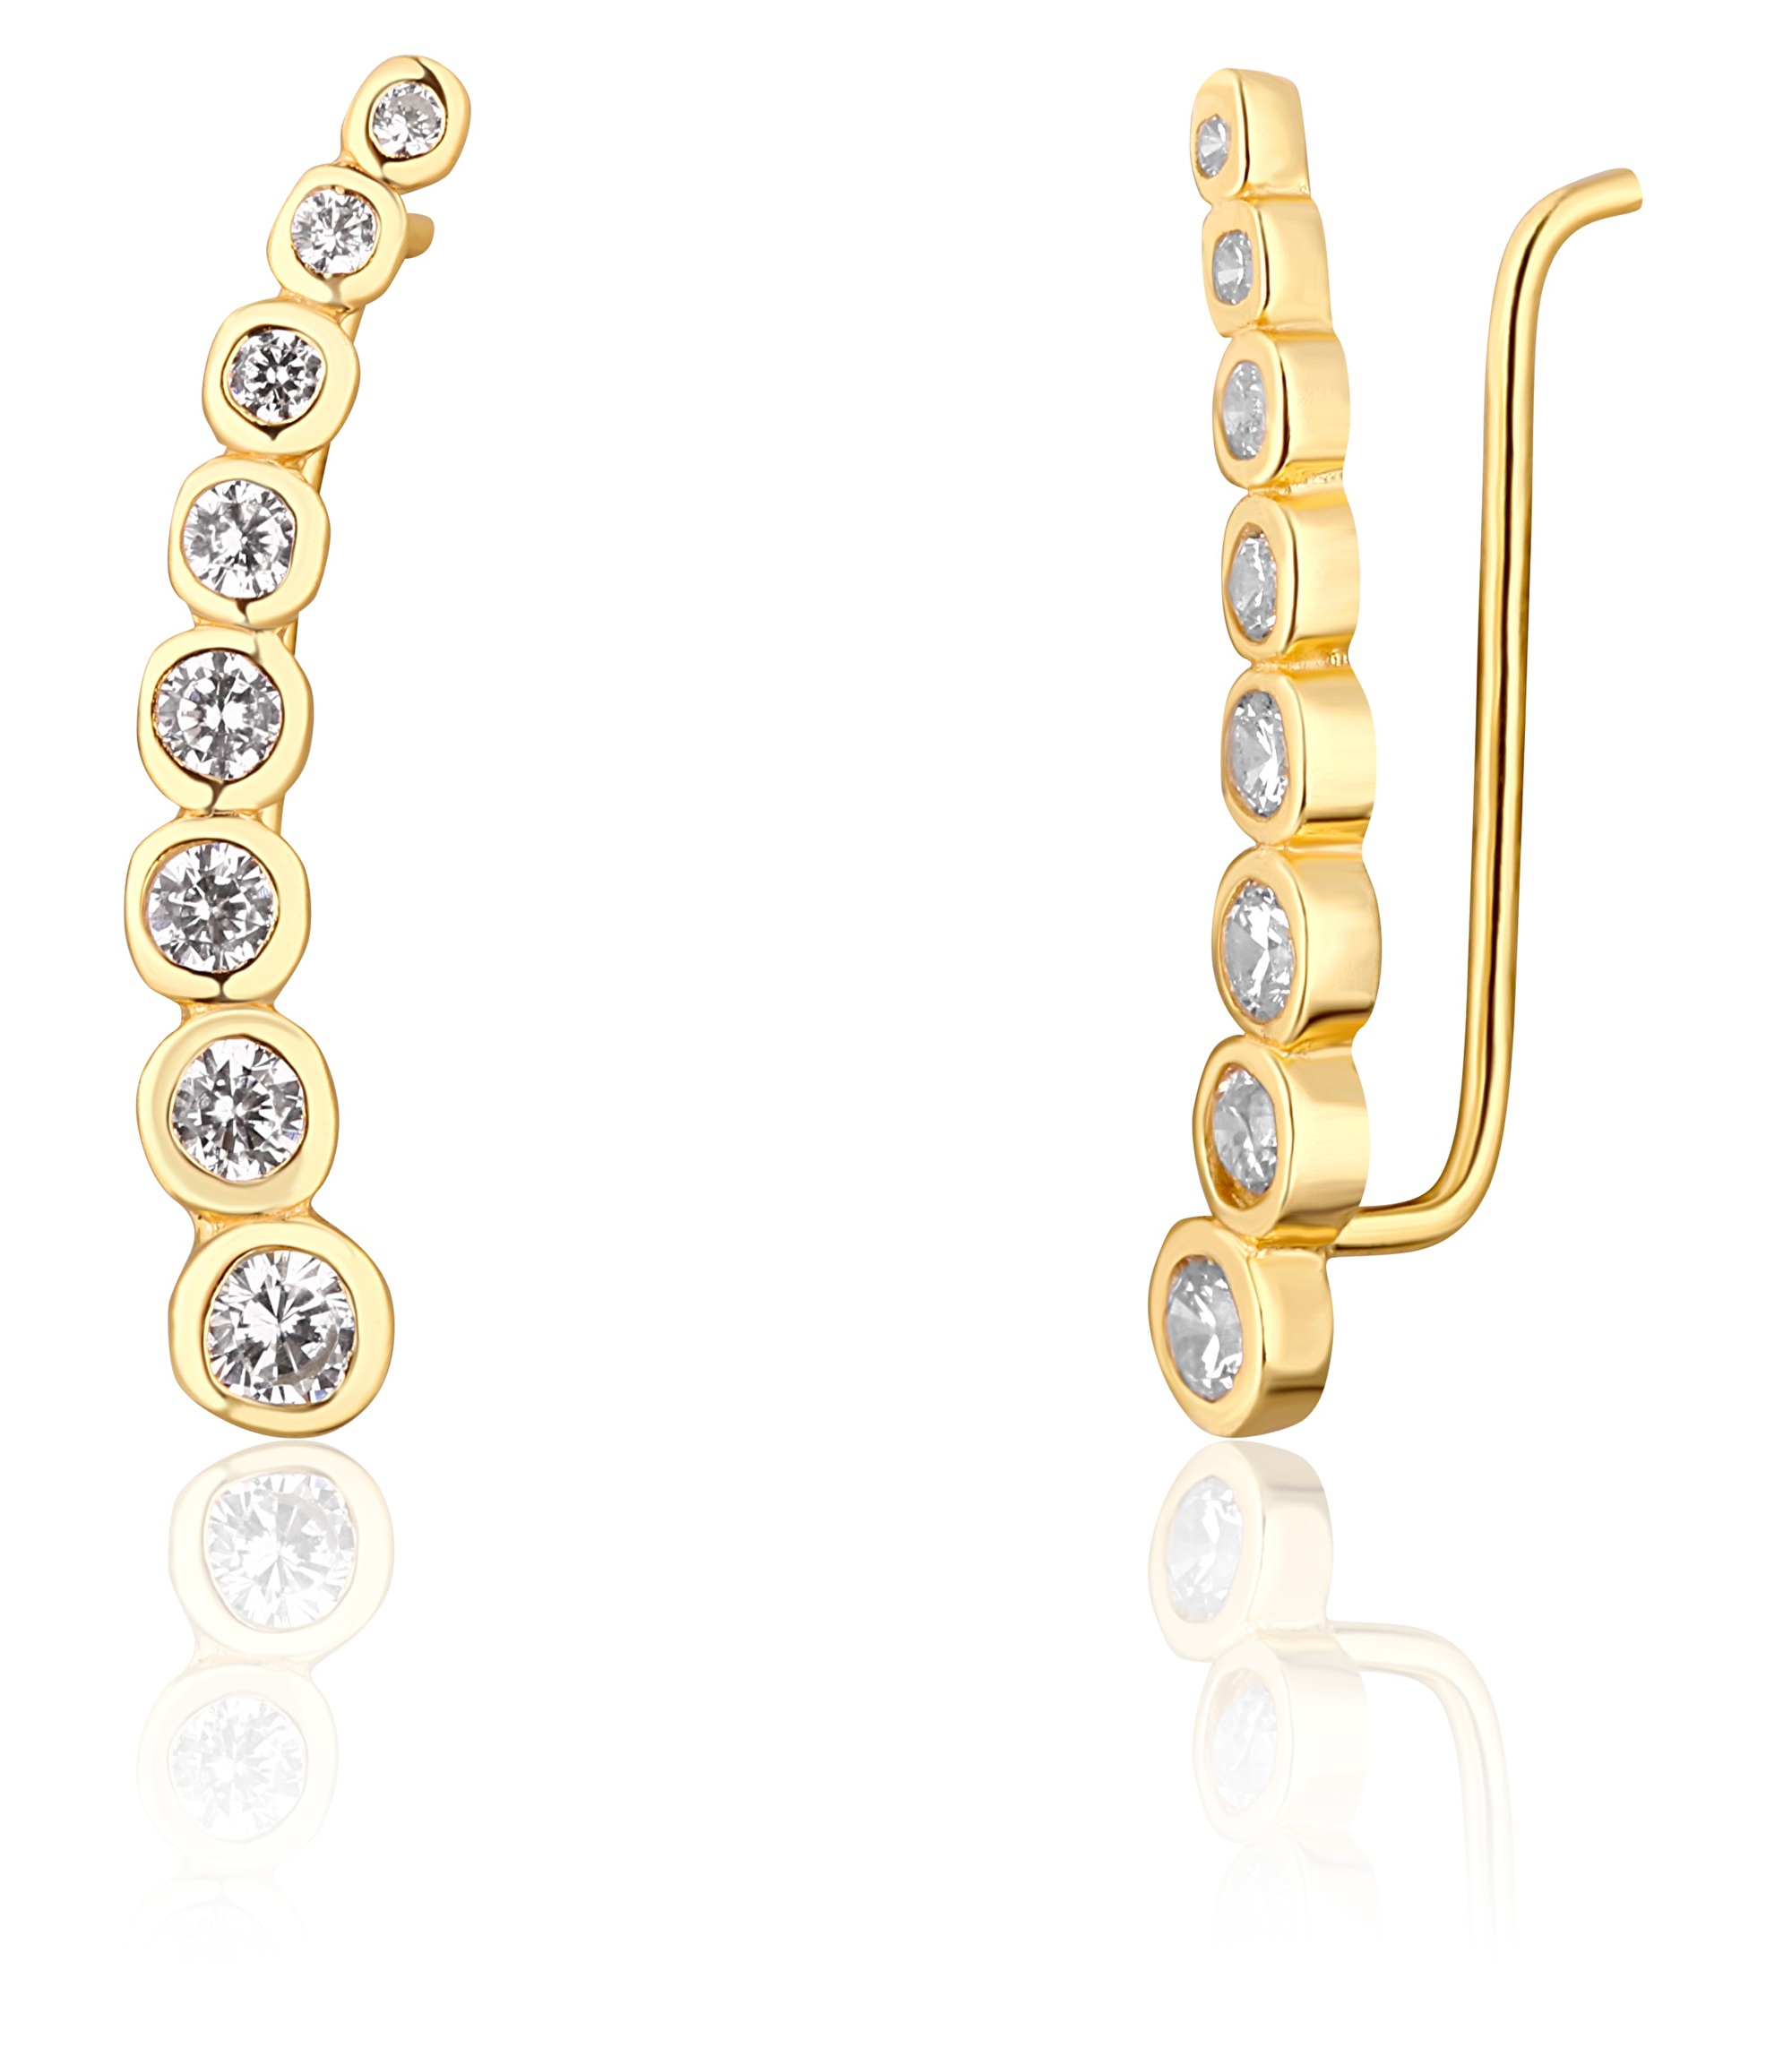 JwL Luxury Pearls Pozlacené podélné náušnice s třpytivými krystaly JL0743